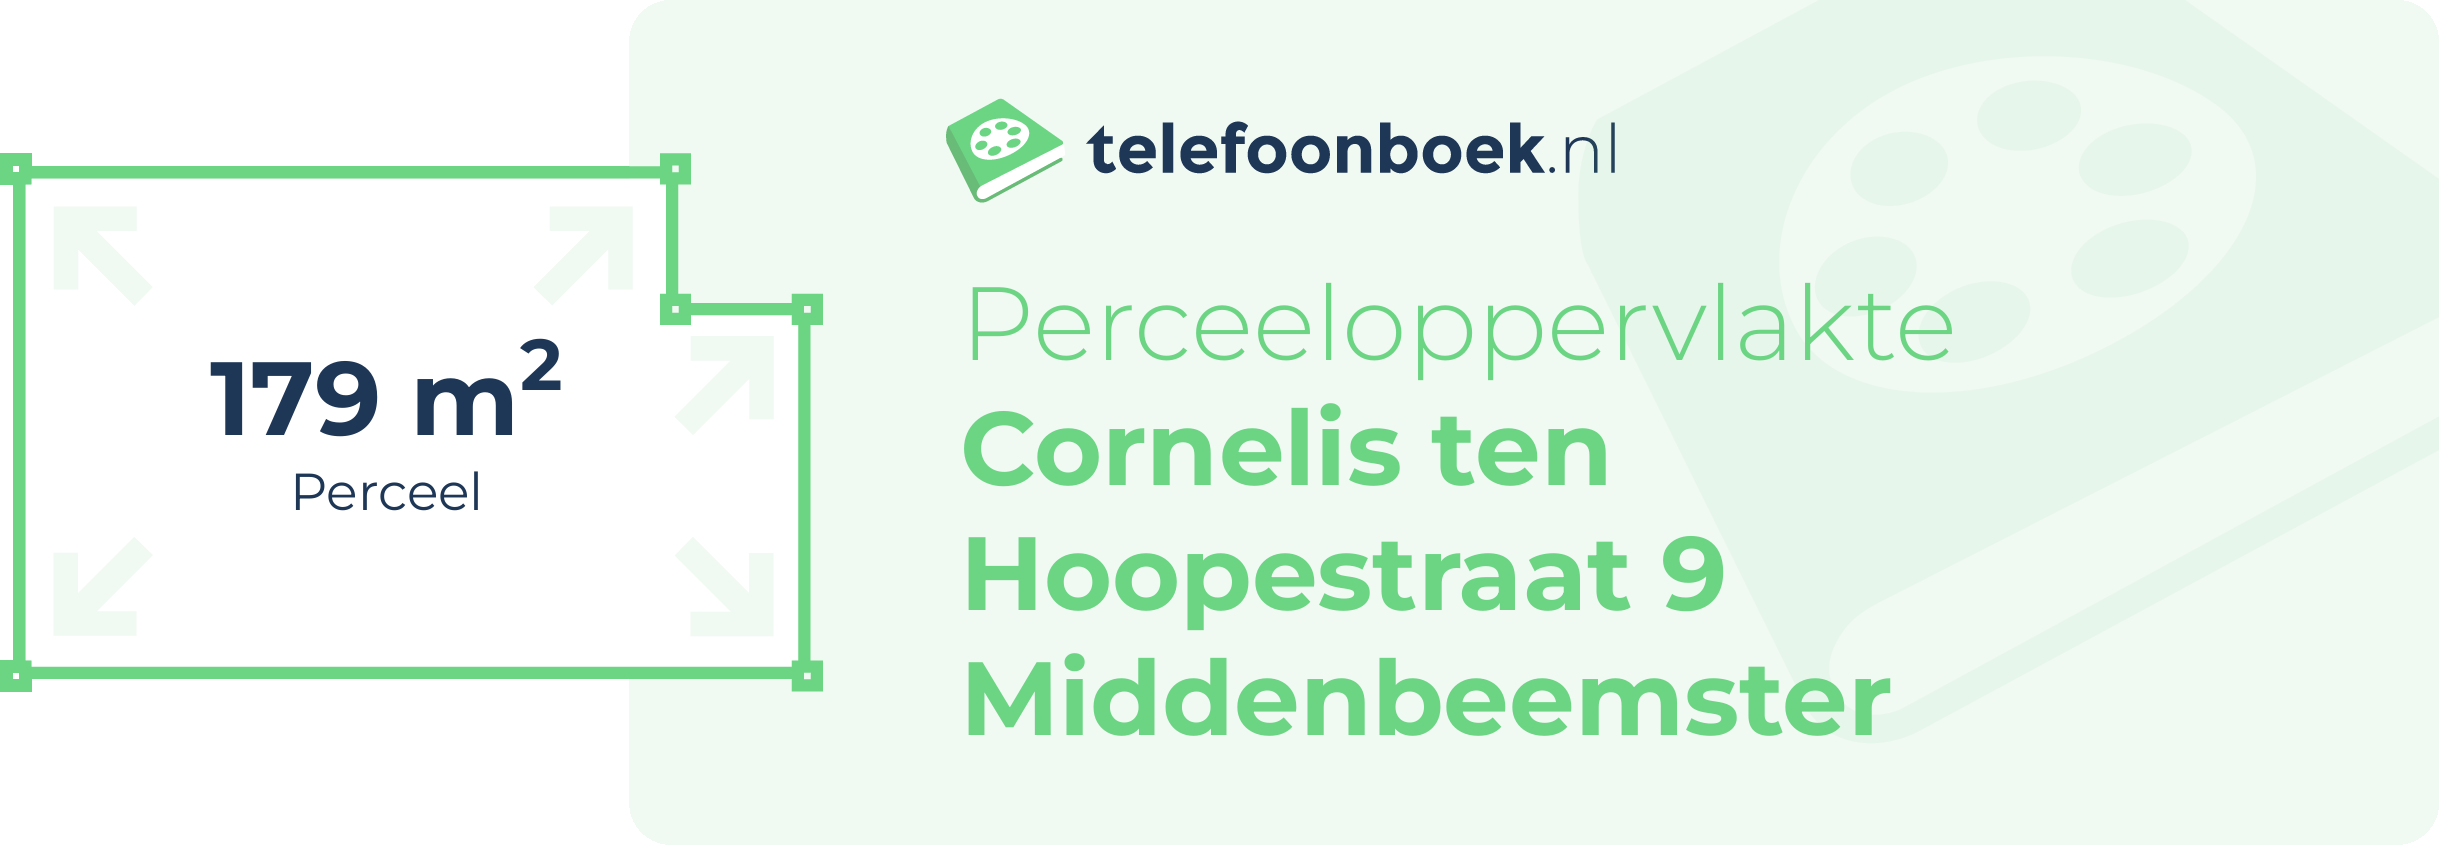 Perceeloppervlakte Cornelis Ten Hoopestraat 9 Middenbeemster